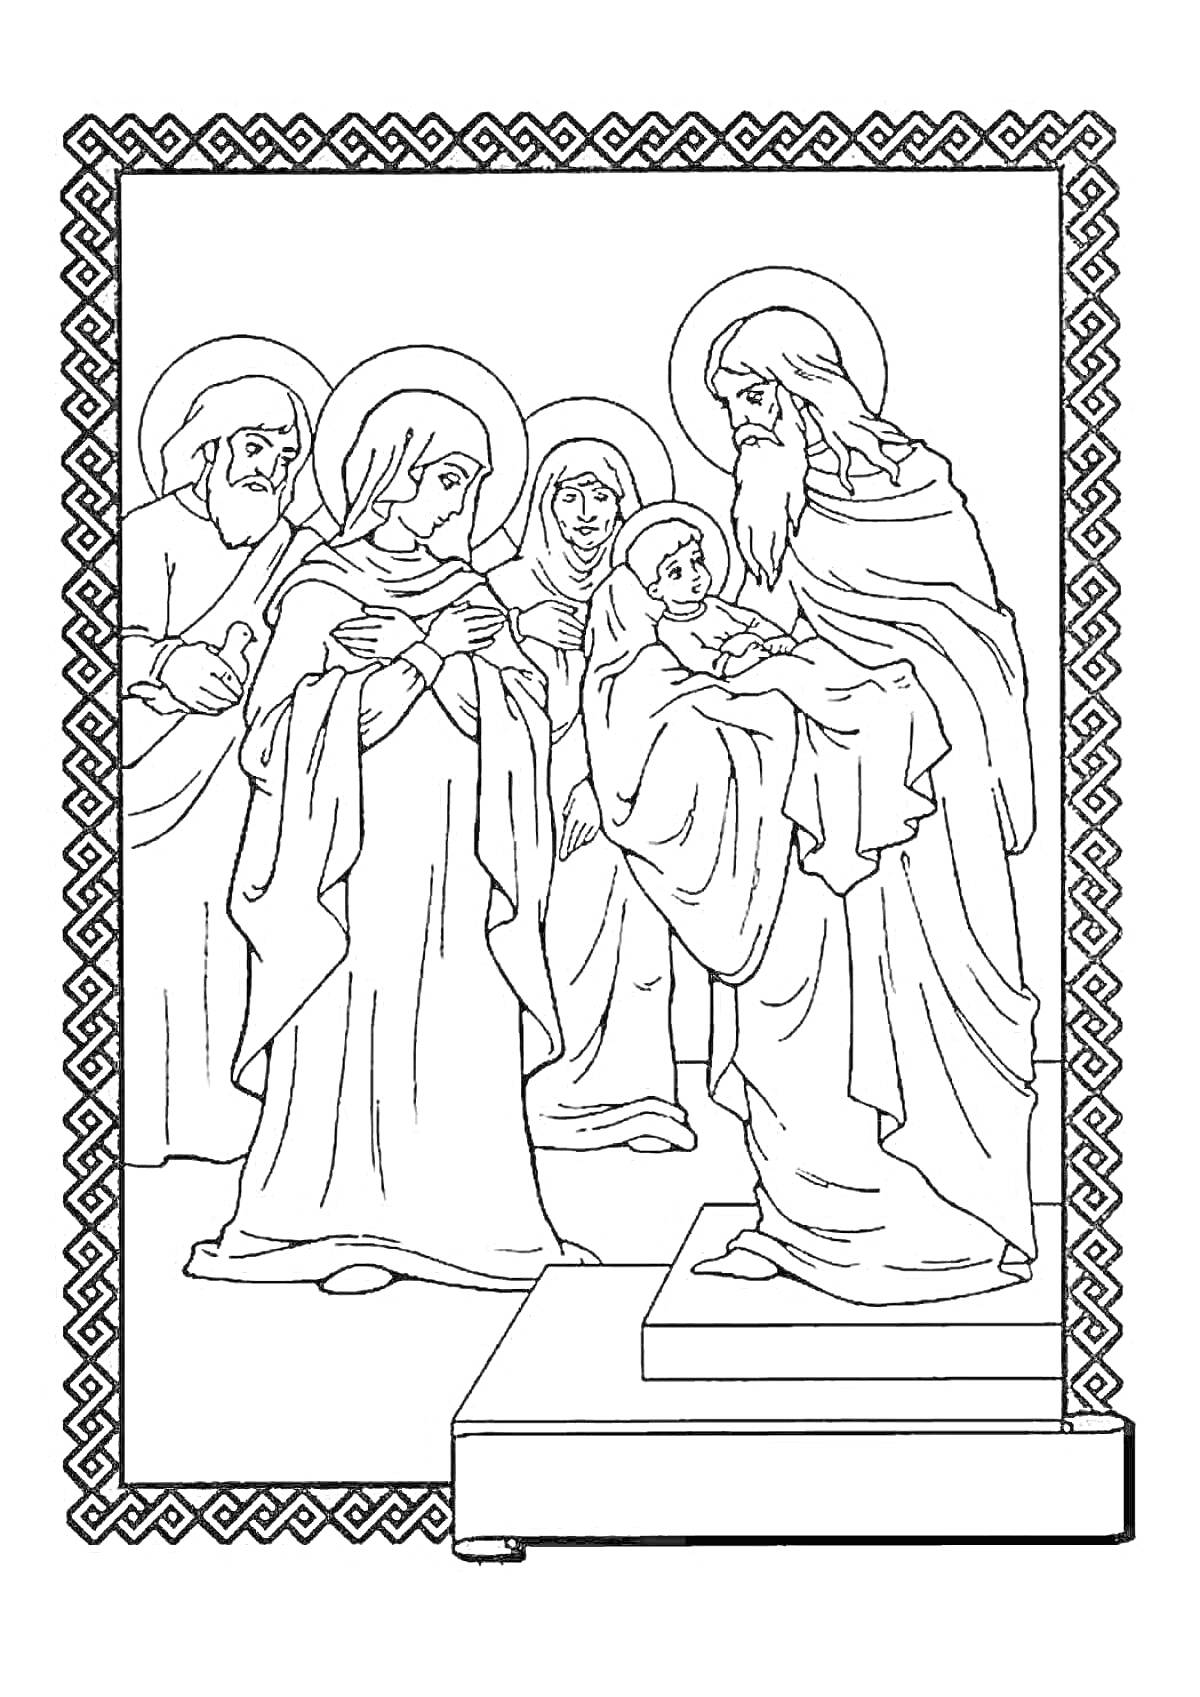 Раскраска Православное священное семейное событие в храме с шестью святыми, включая младенца и старца